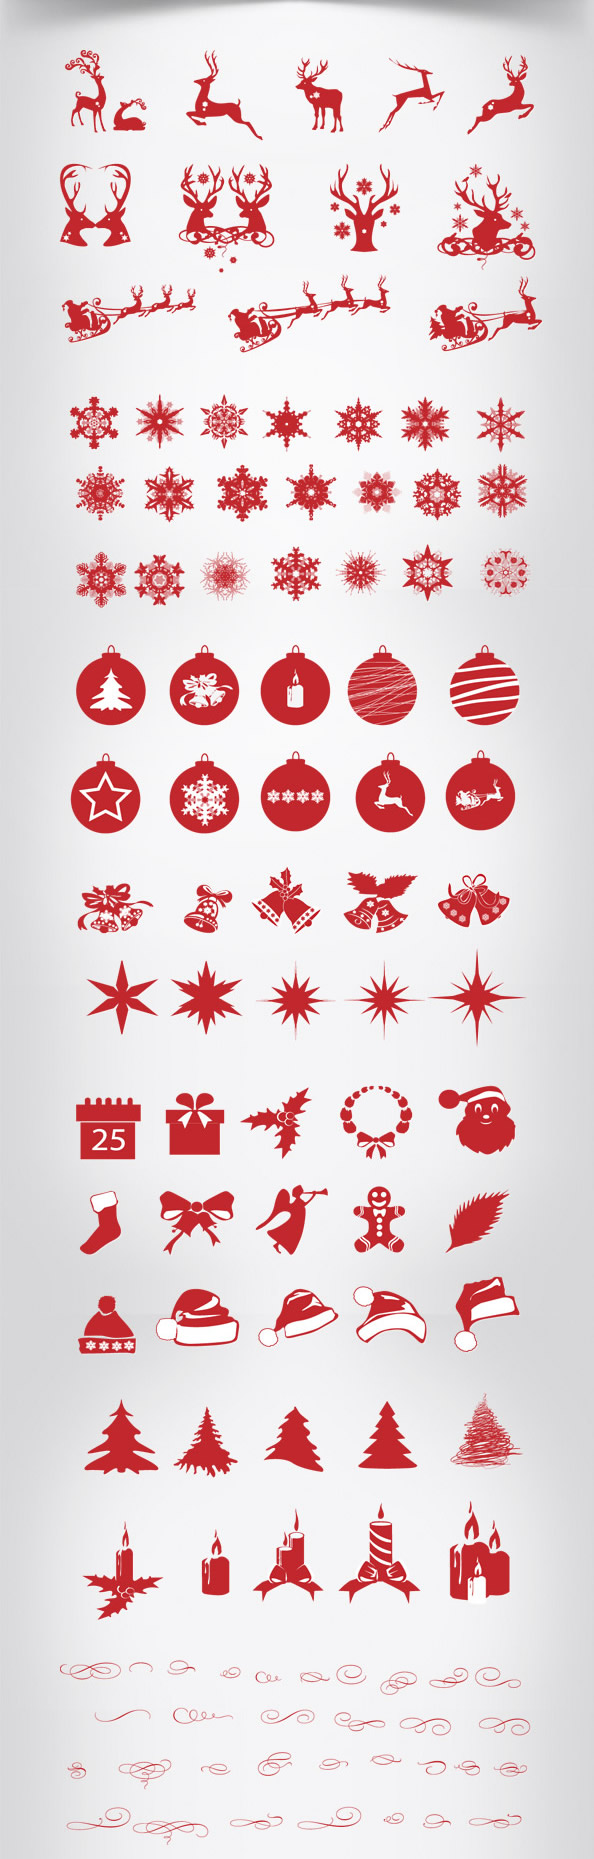 图形圣诞节,圣诞节图标,度假的图形,节日PSD,假期剪影